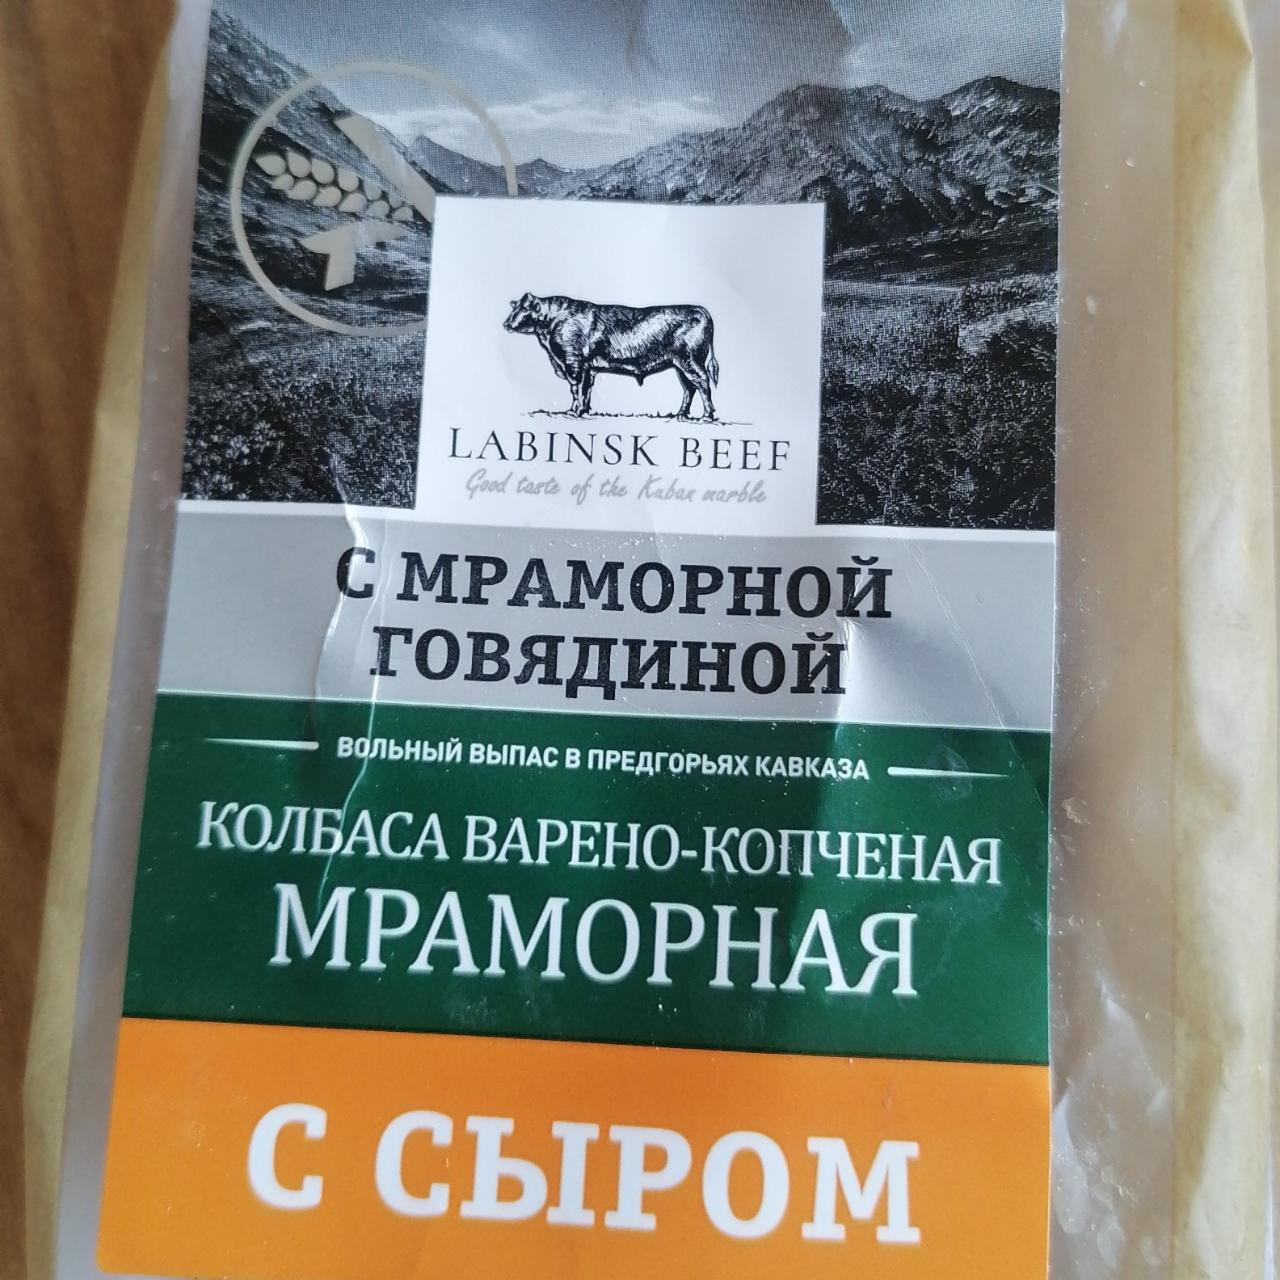 Фото - Колбаса варено-копченая мраморная с сыром Labinsk Beef